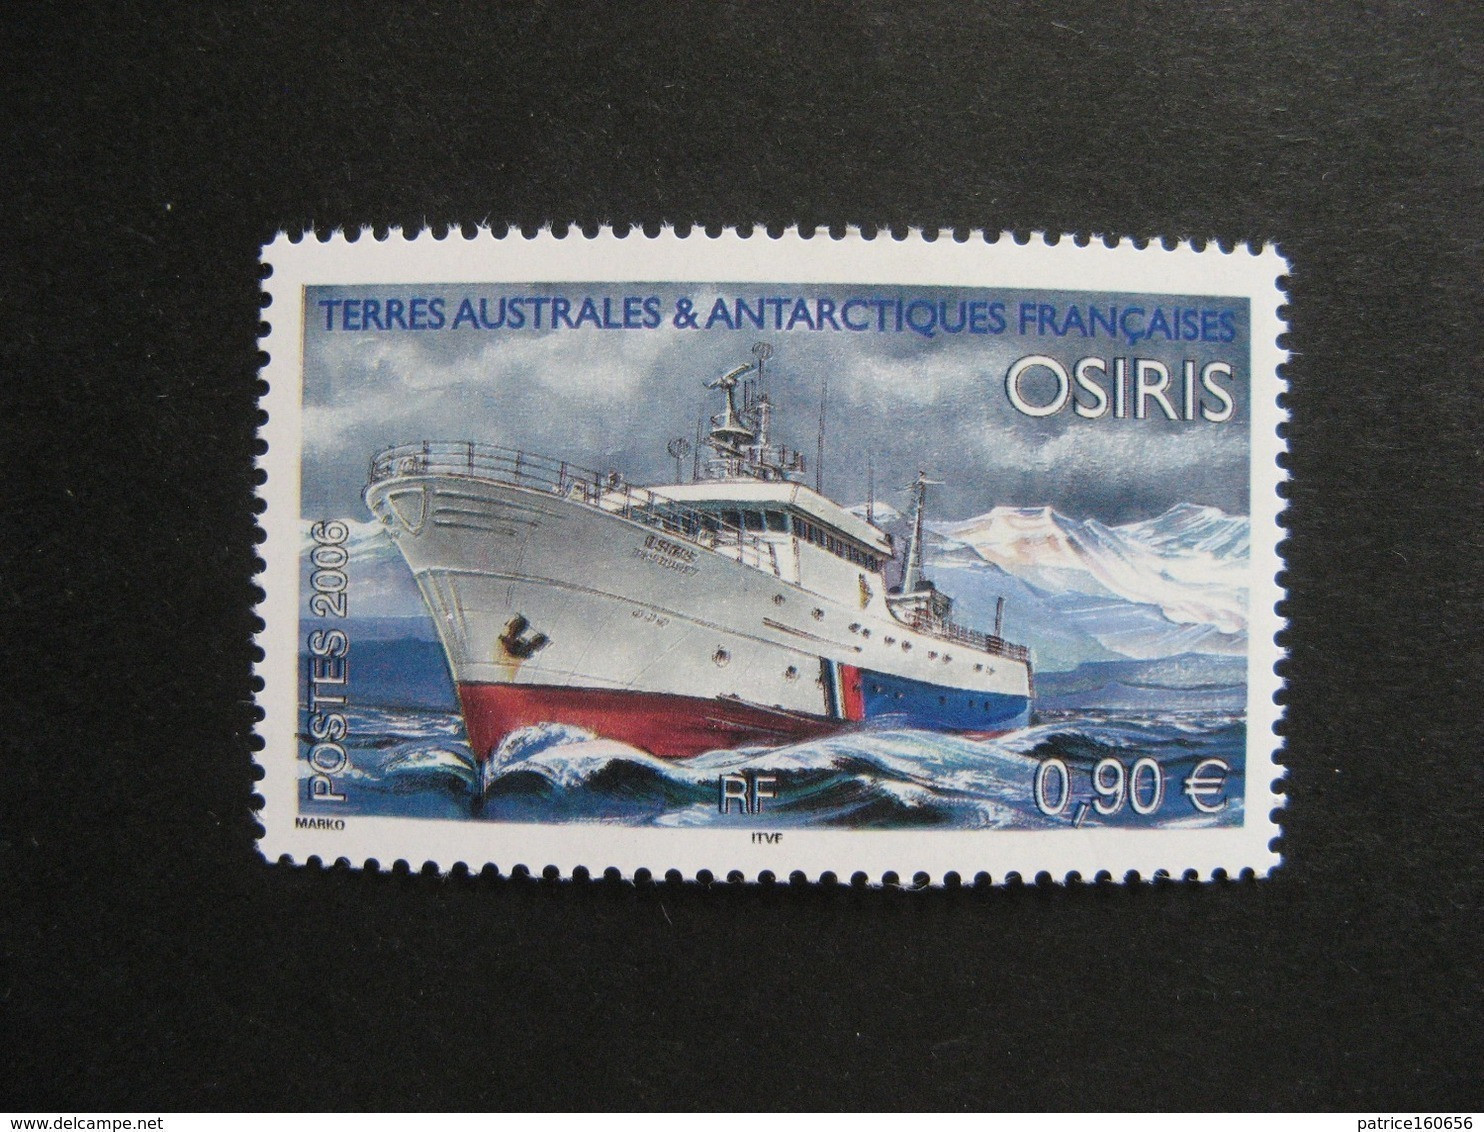 TAAF: TB N° 442, Neuf XX. - Unused Stamps